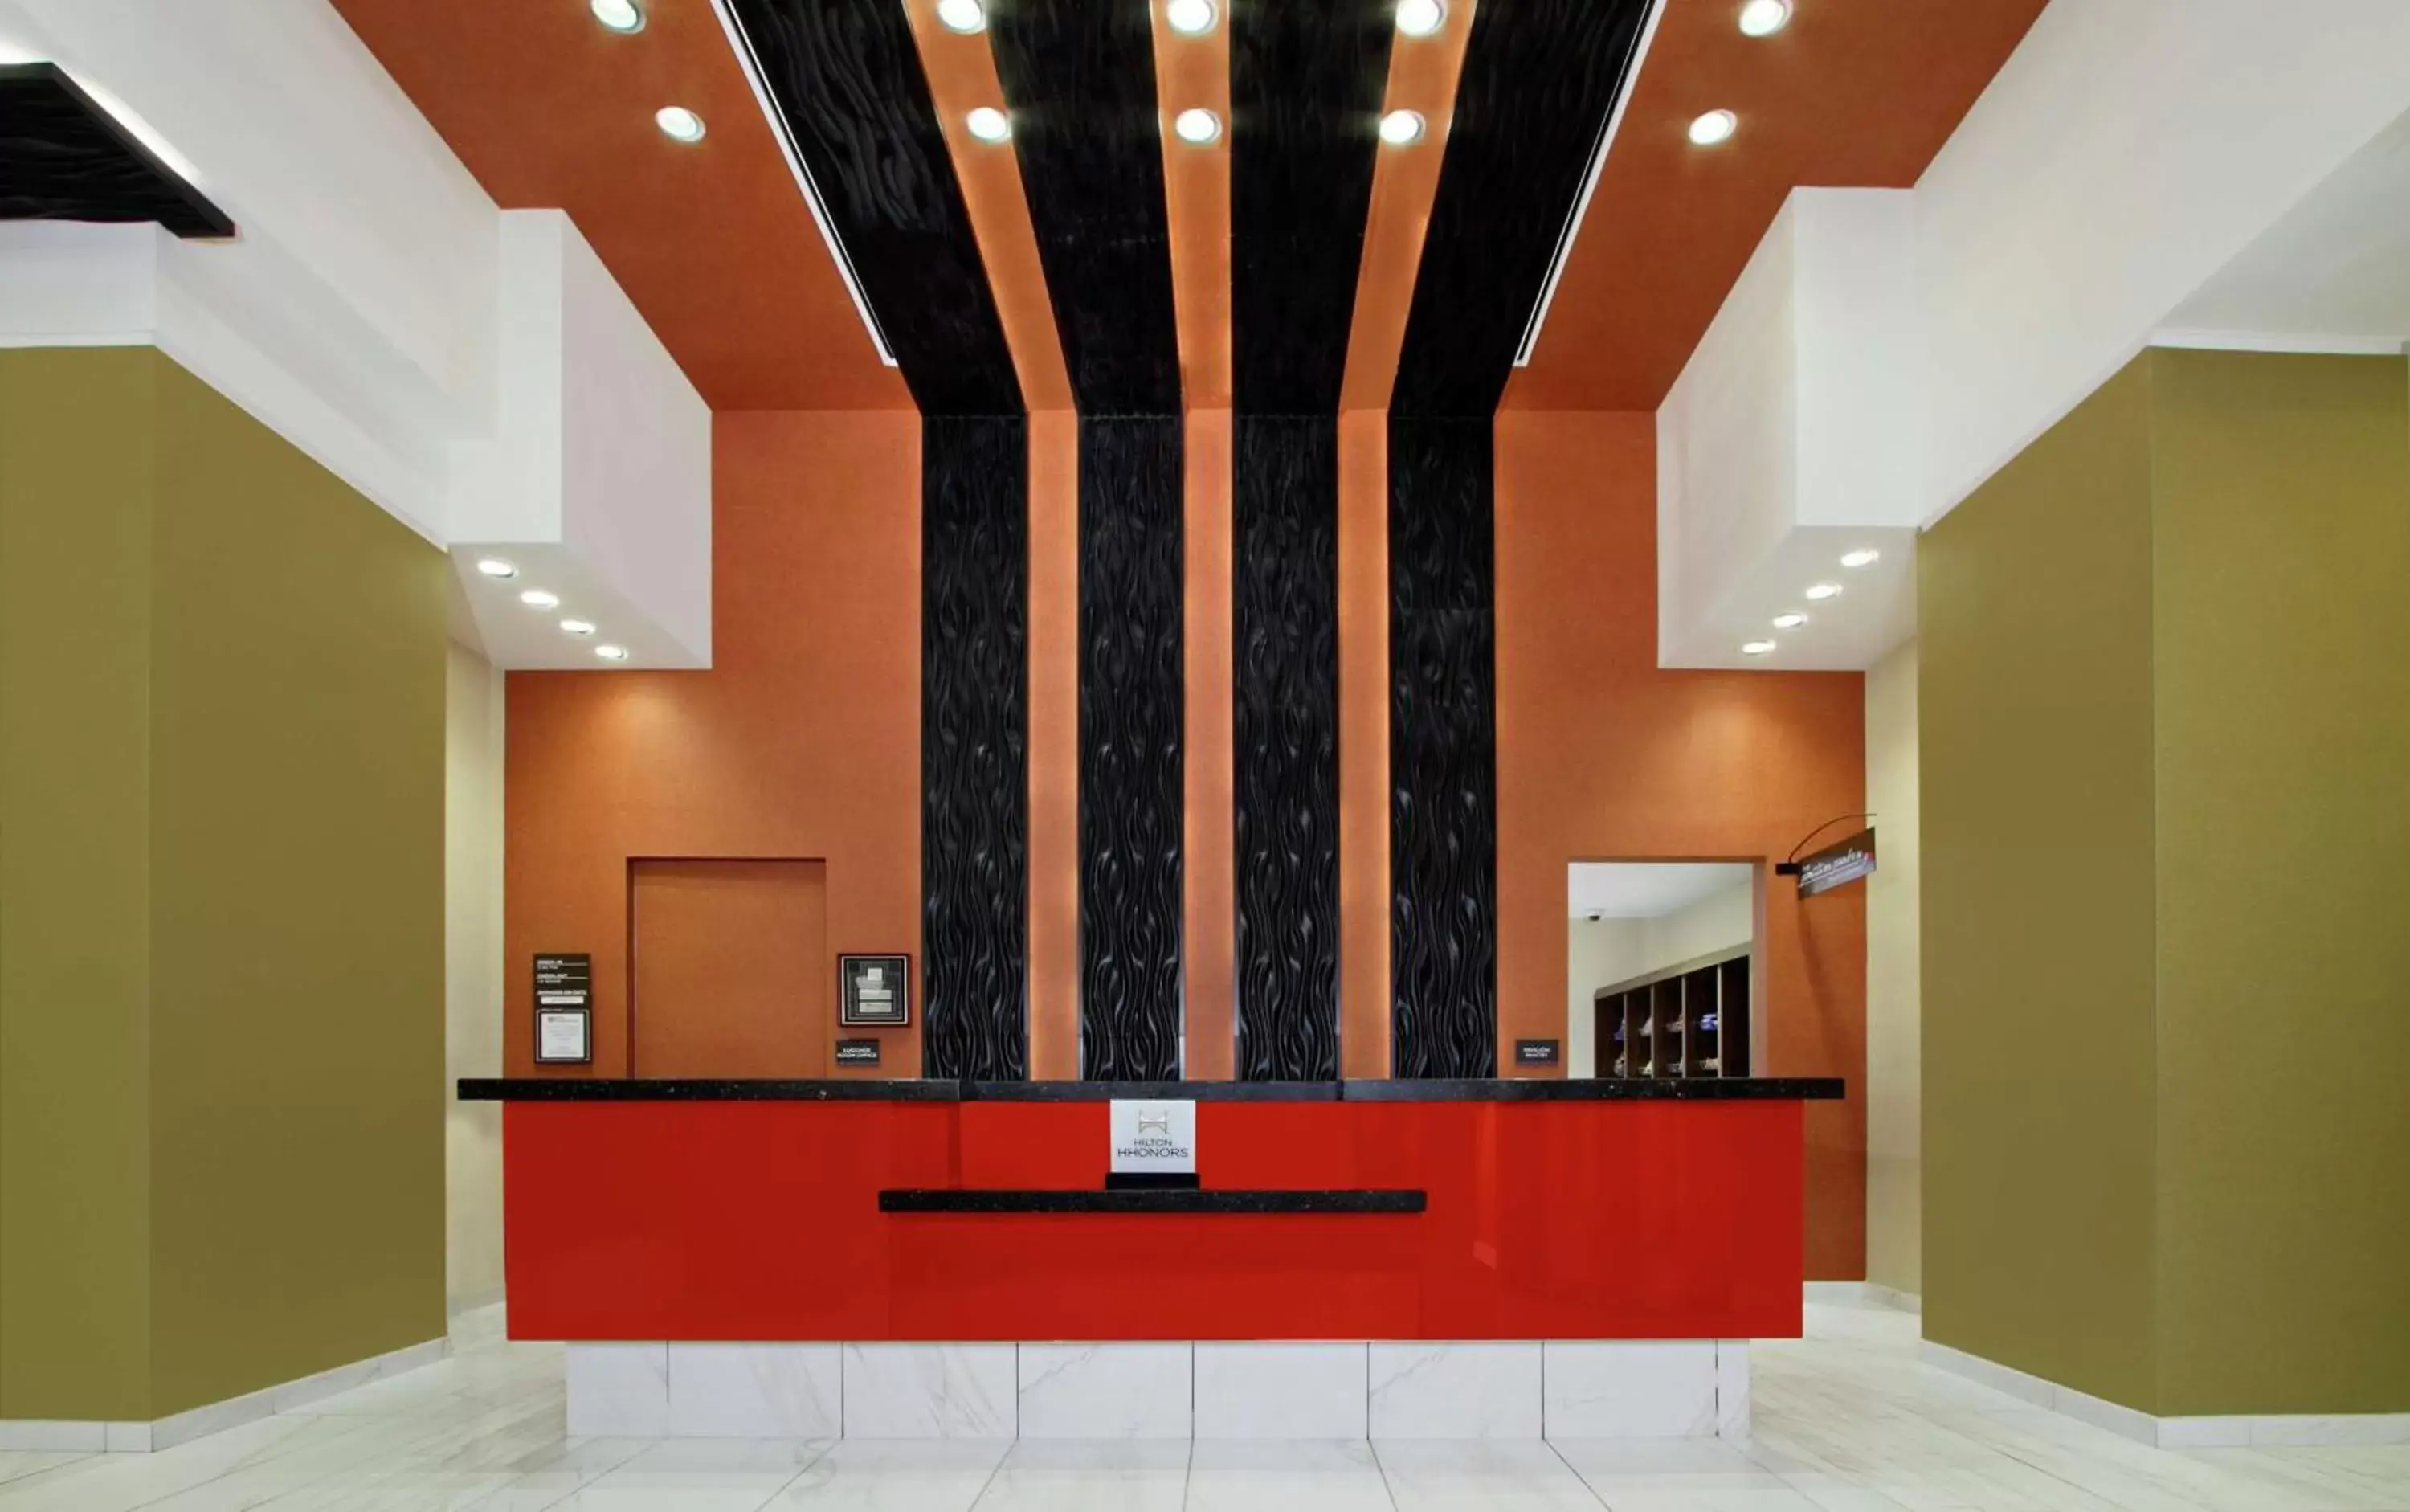 Lobby or reception in Hilton Garden Inn New York/Midtown Park Avenue